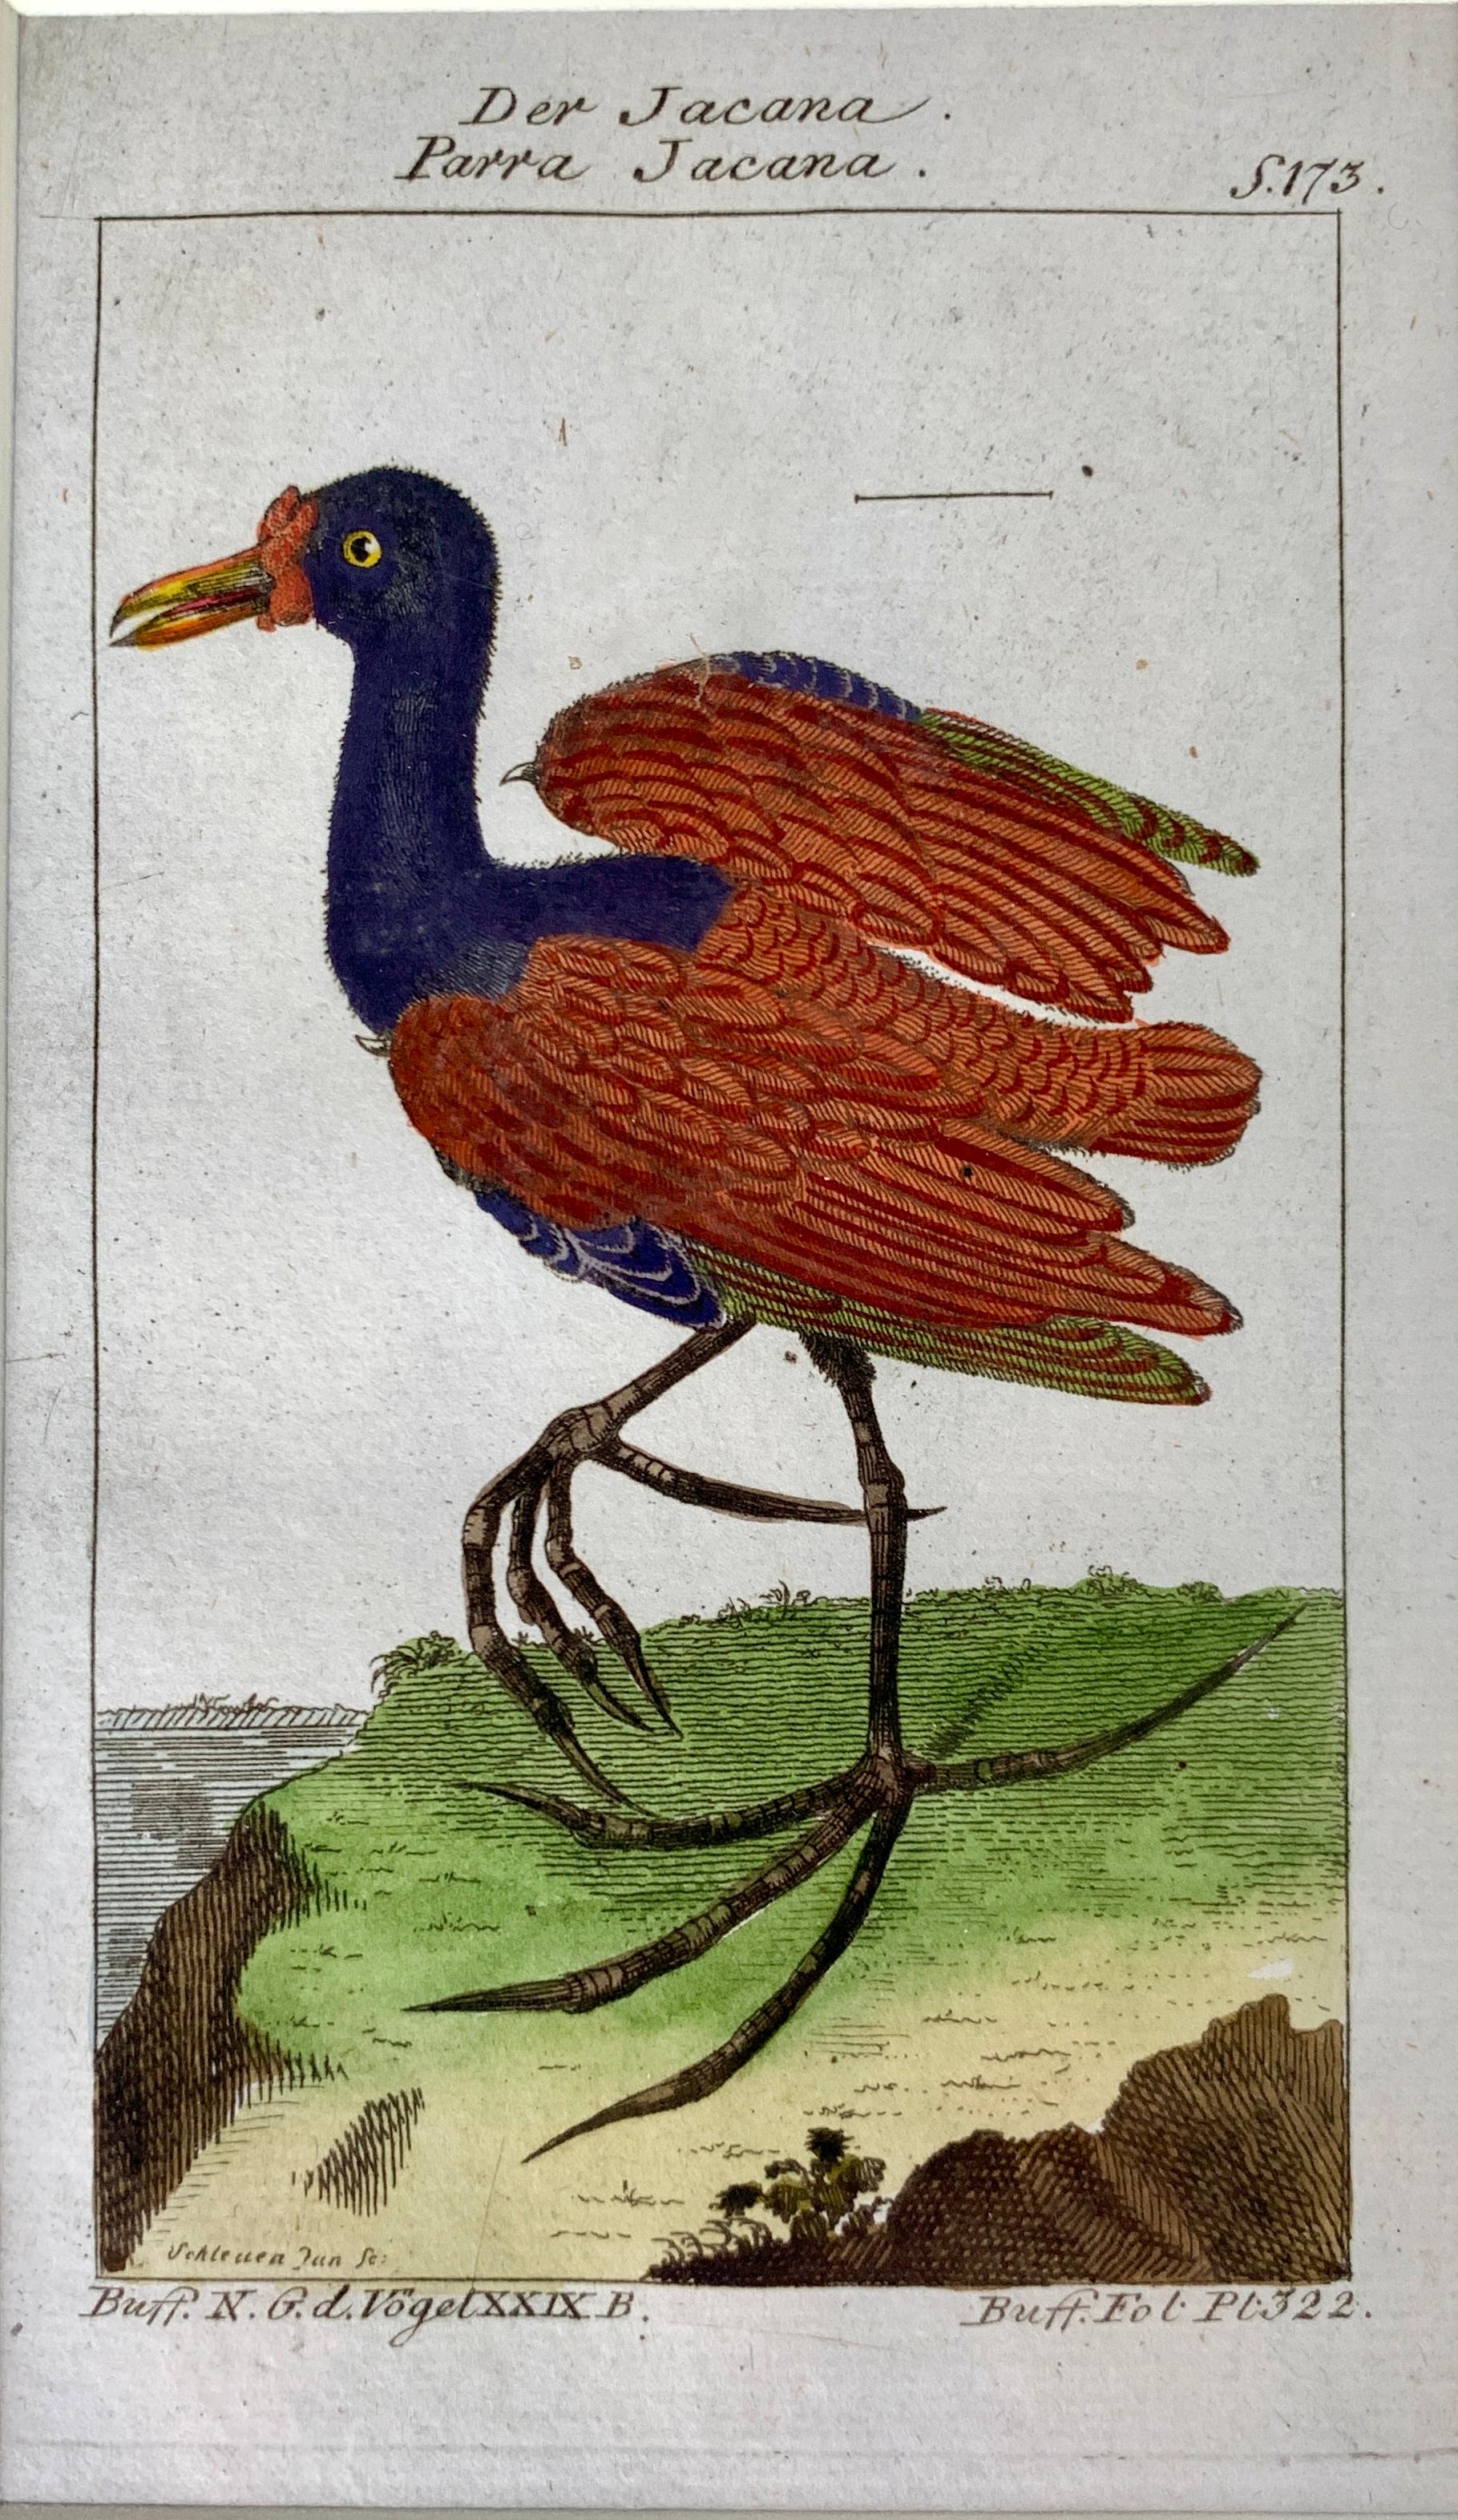 Impressions allemandes oiseaux Série de gravures ornithologiques Martinet-Buffon C-1790 '2' 2